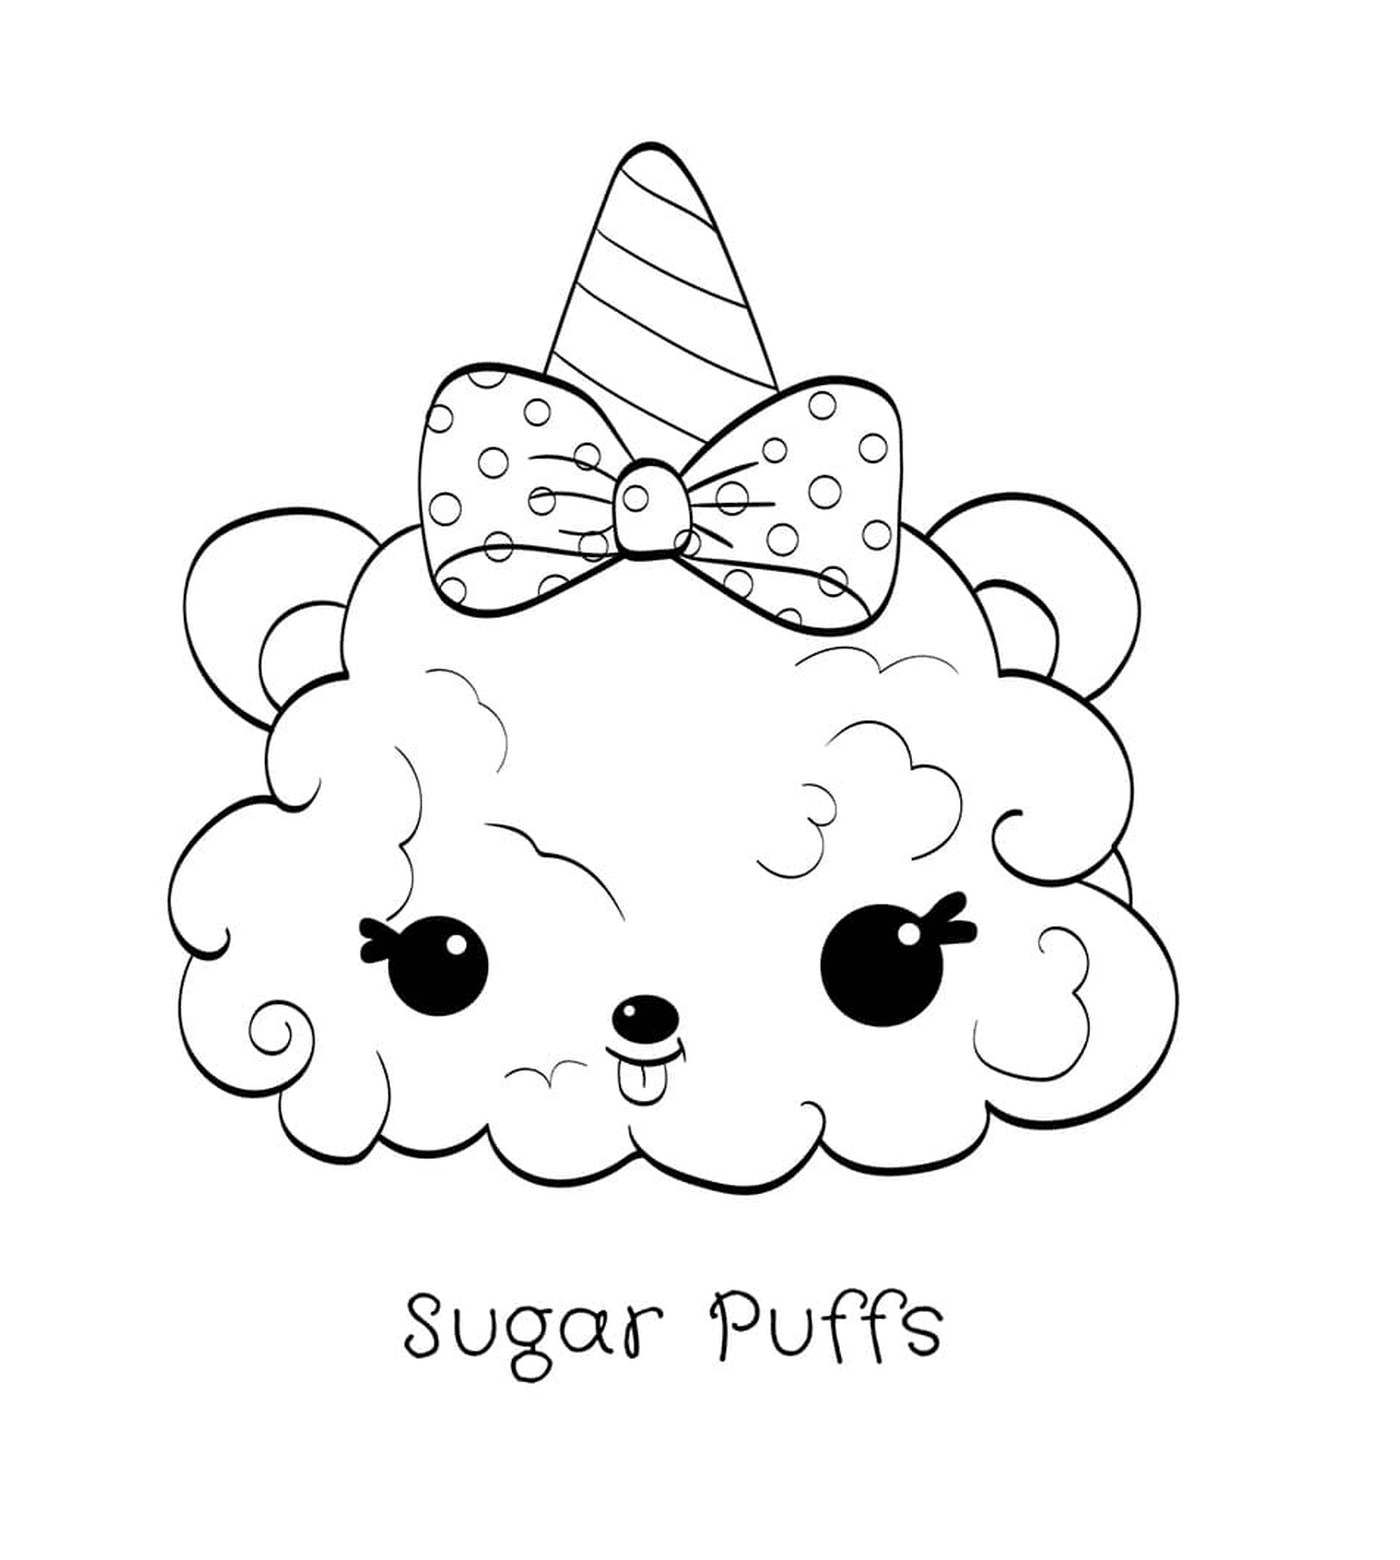  Puffs di zucchero 